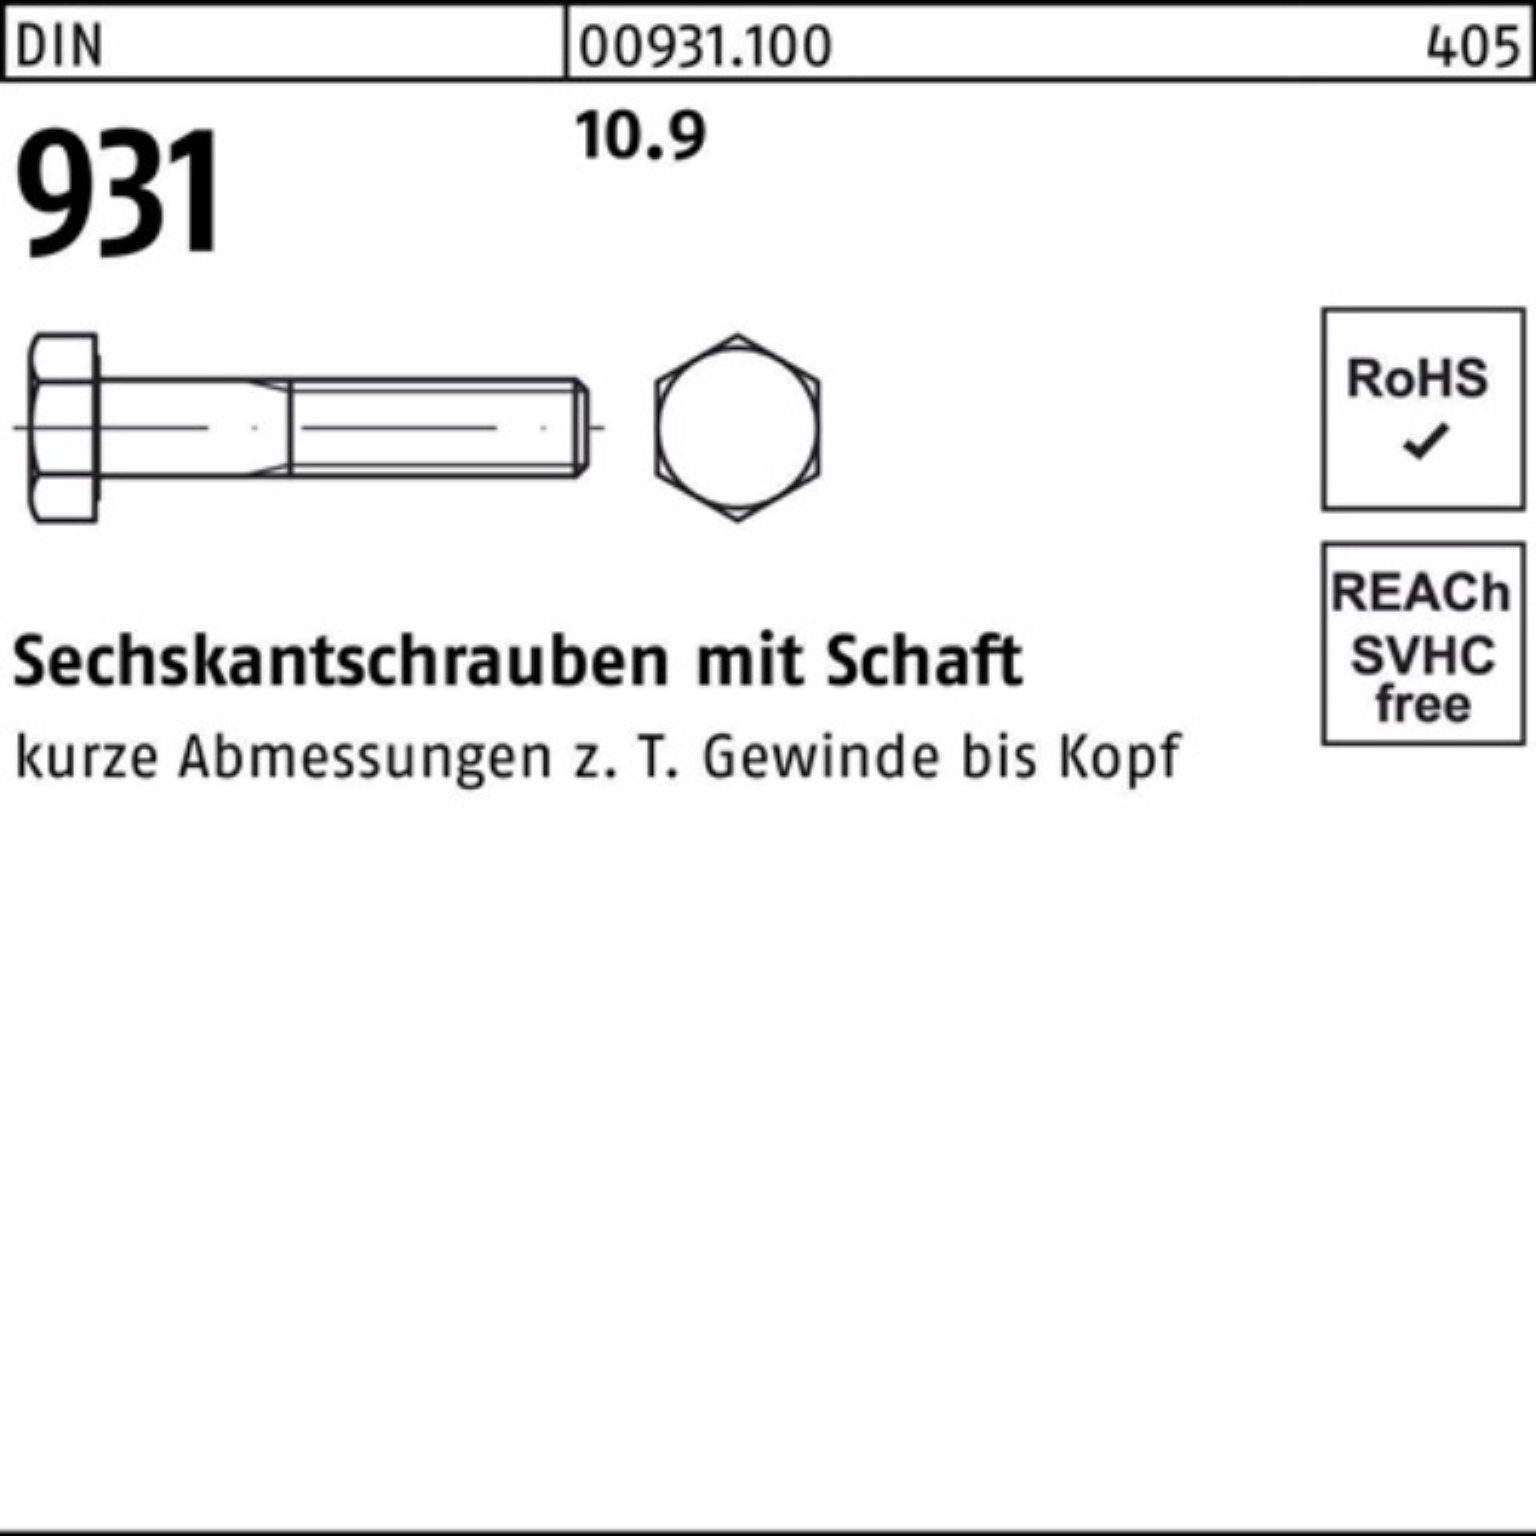 270 M36x Stück Schaft 100er DIN Reyher 1 Pack Sechskantschraube 10.9 Sechskantschraube DIN 931